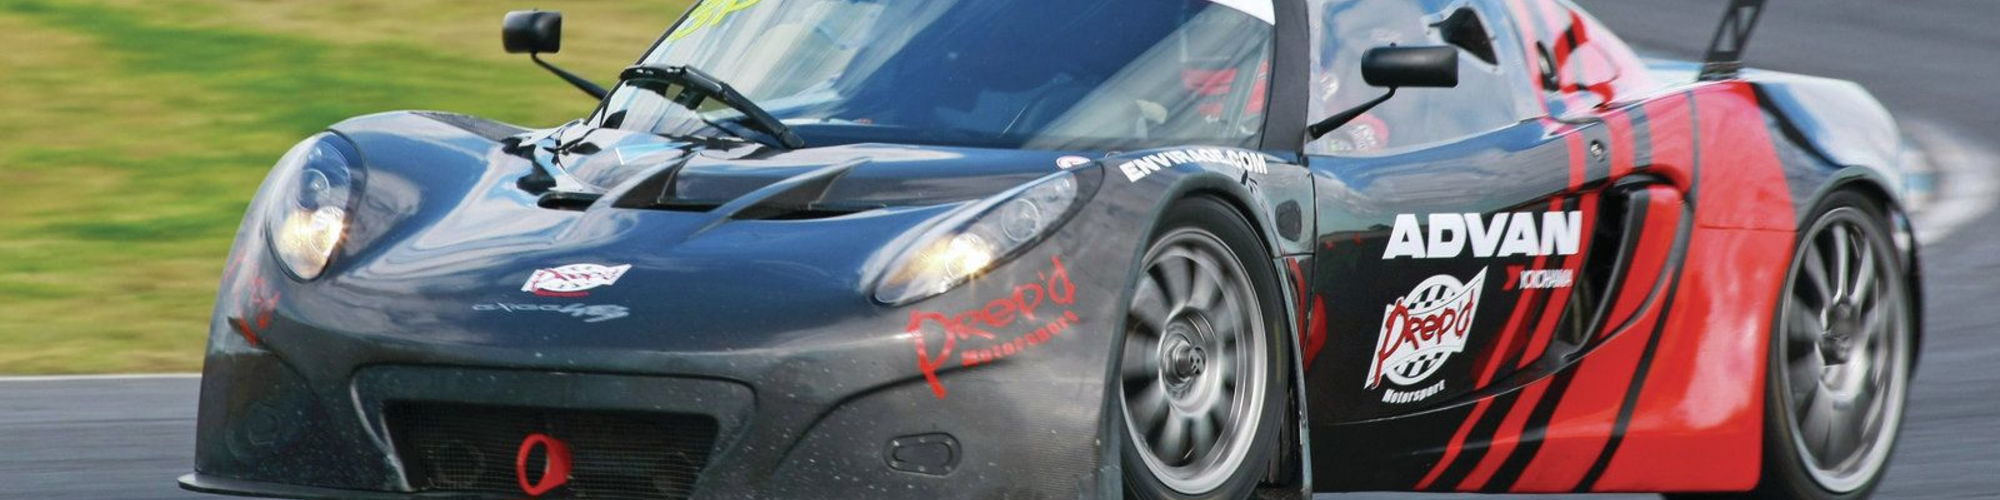 Prep’d Motorsport cover image